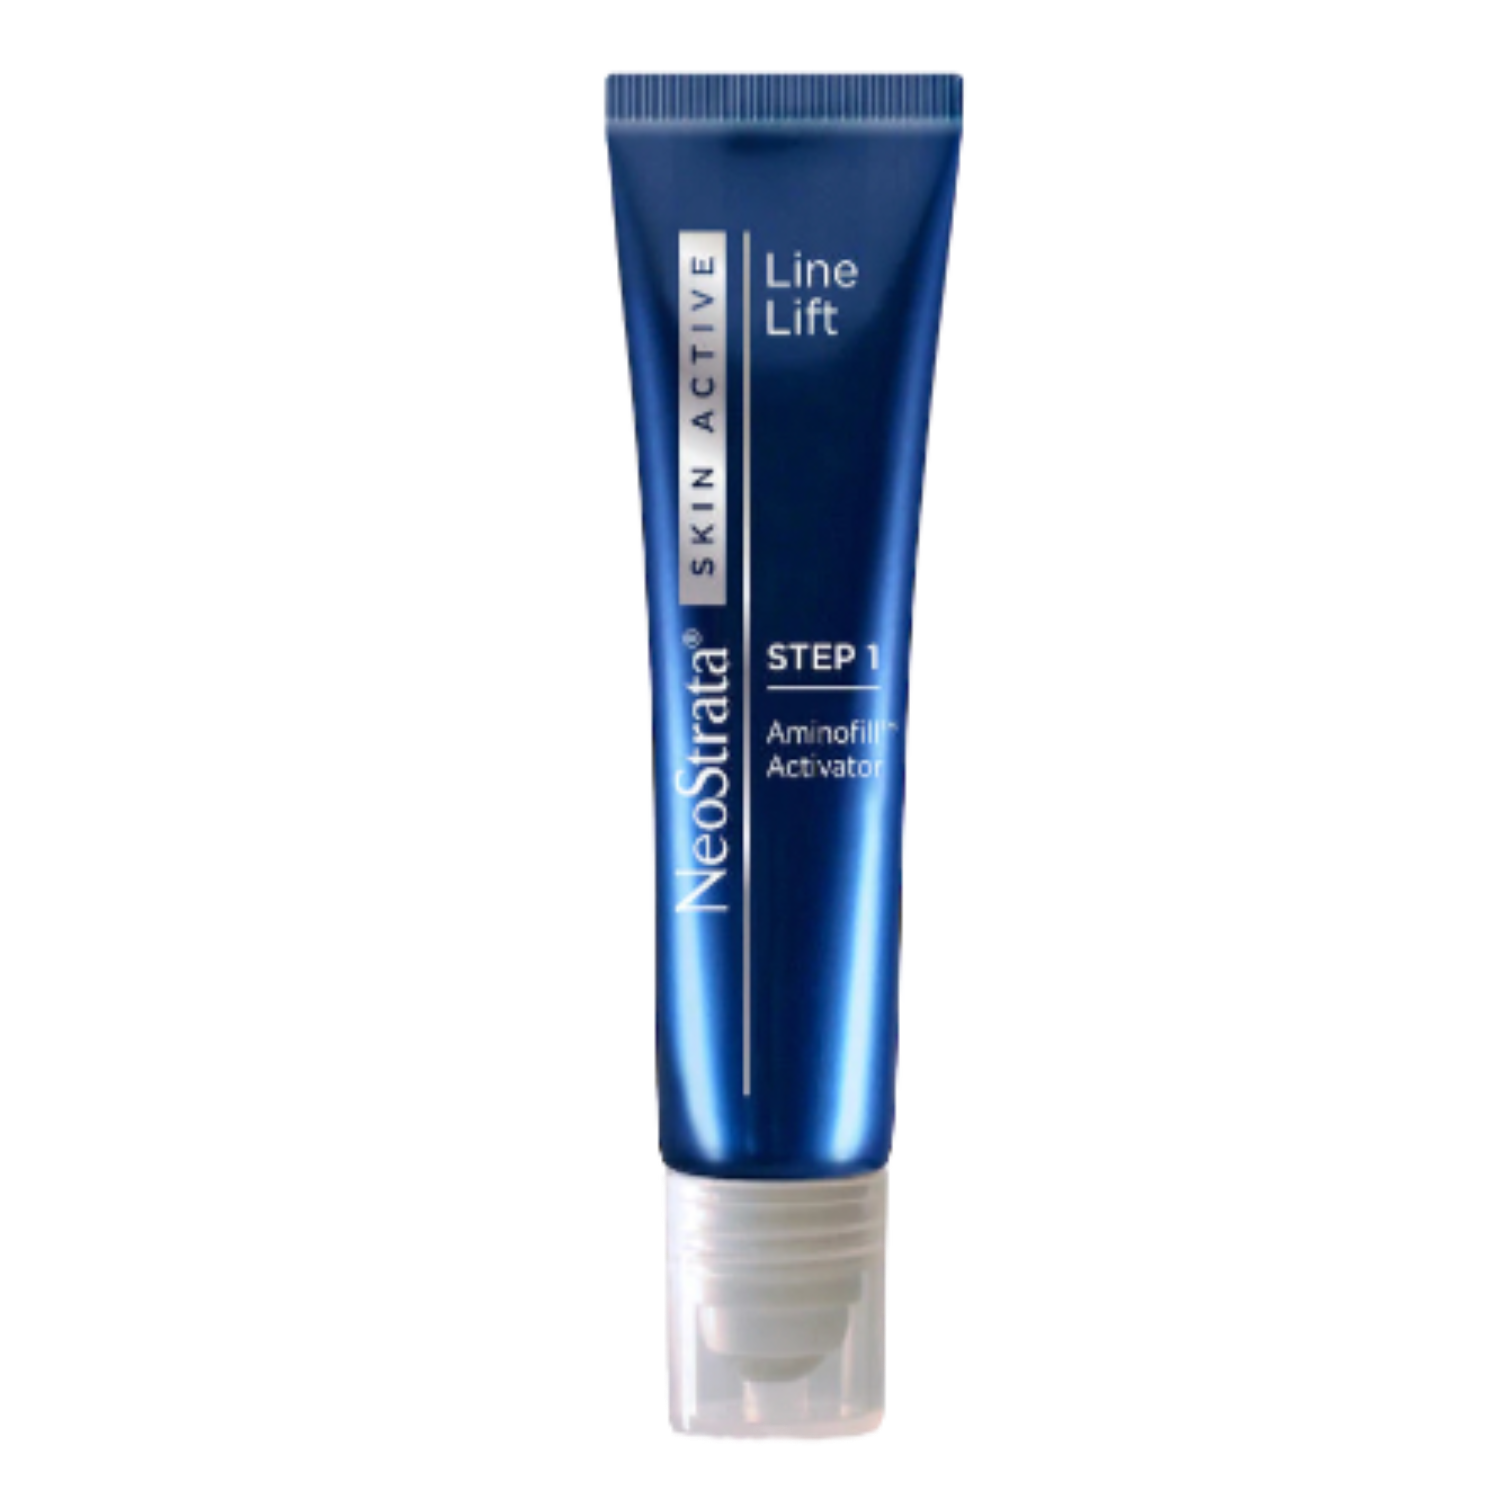 Skin Active Line Lift paso 1 es el gel ideal para arrugas profundas, formulado con una innovadora, potente y revolucionaria tecnología Aminofil para ayudar a construir el volumen natural de la piel y reducir visiblemente la apariencia de líneas y arrugas. También es recomendado usar el paso 2 de Skin Active Line Lift.